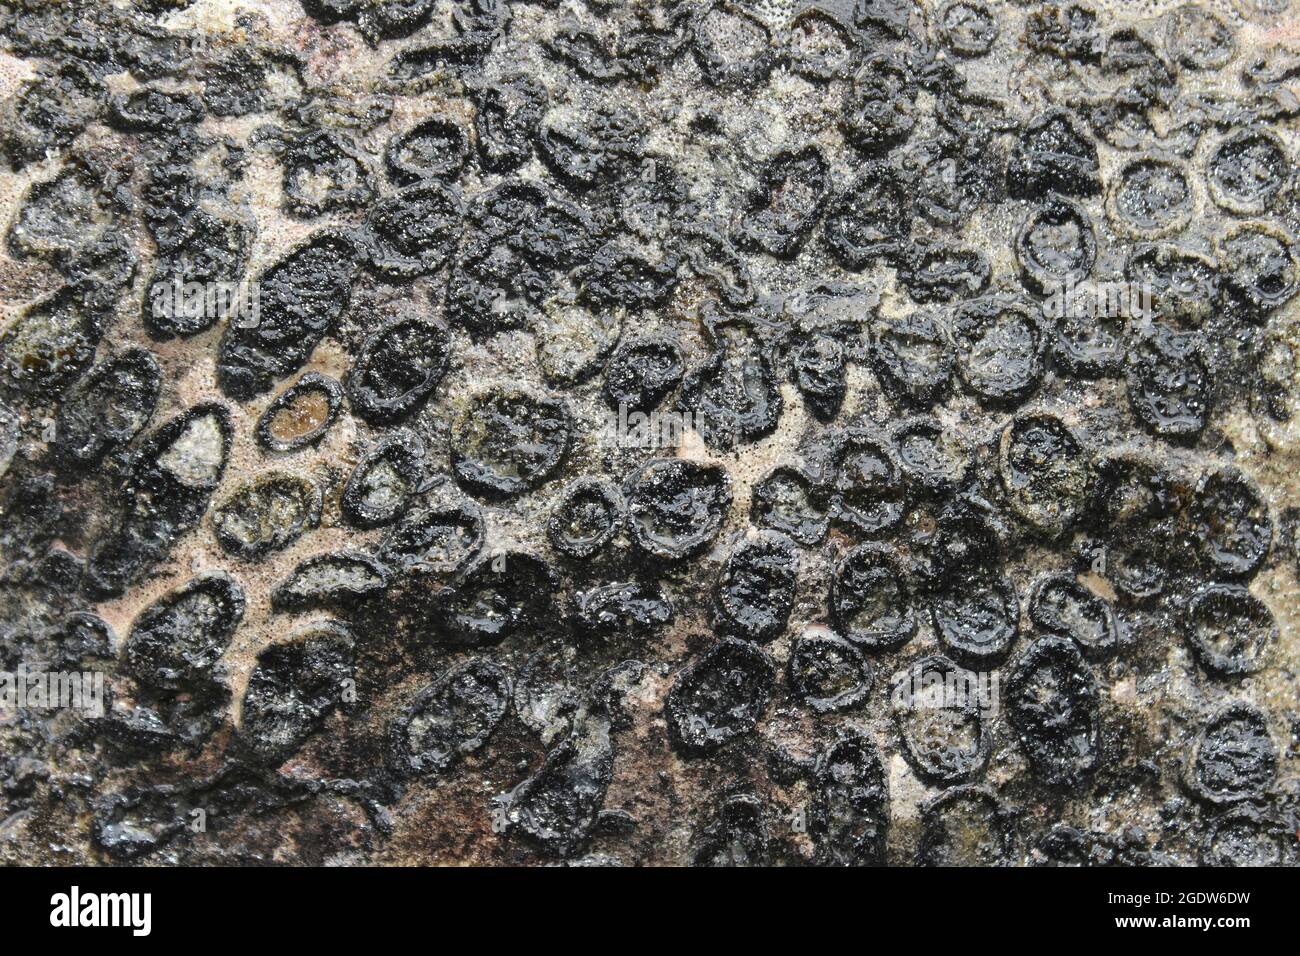 Corail fossilisé coloniale rugueux Lithostrotion junceum Banque D'Images